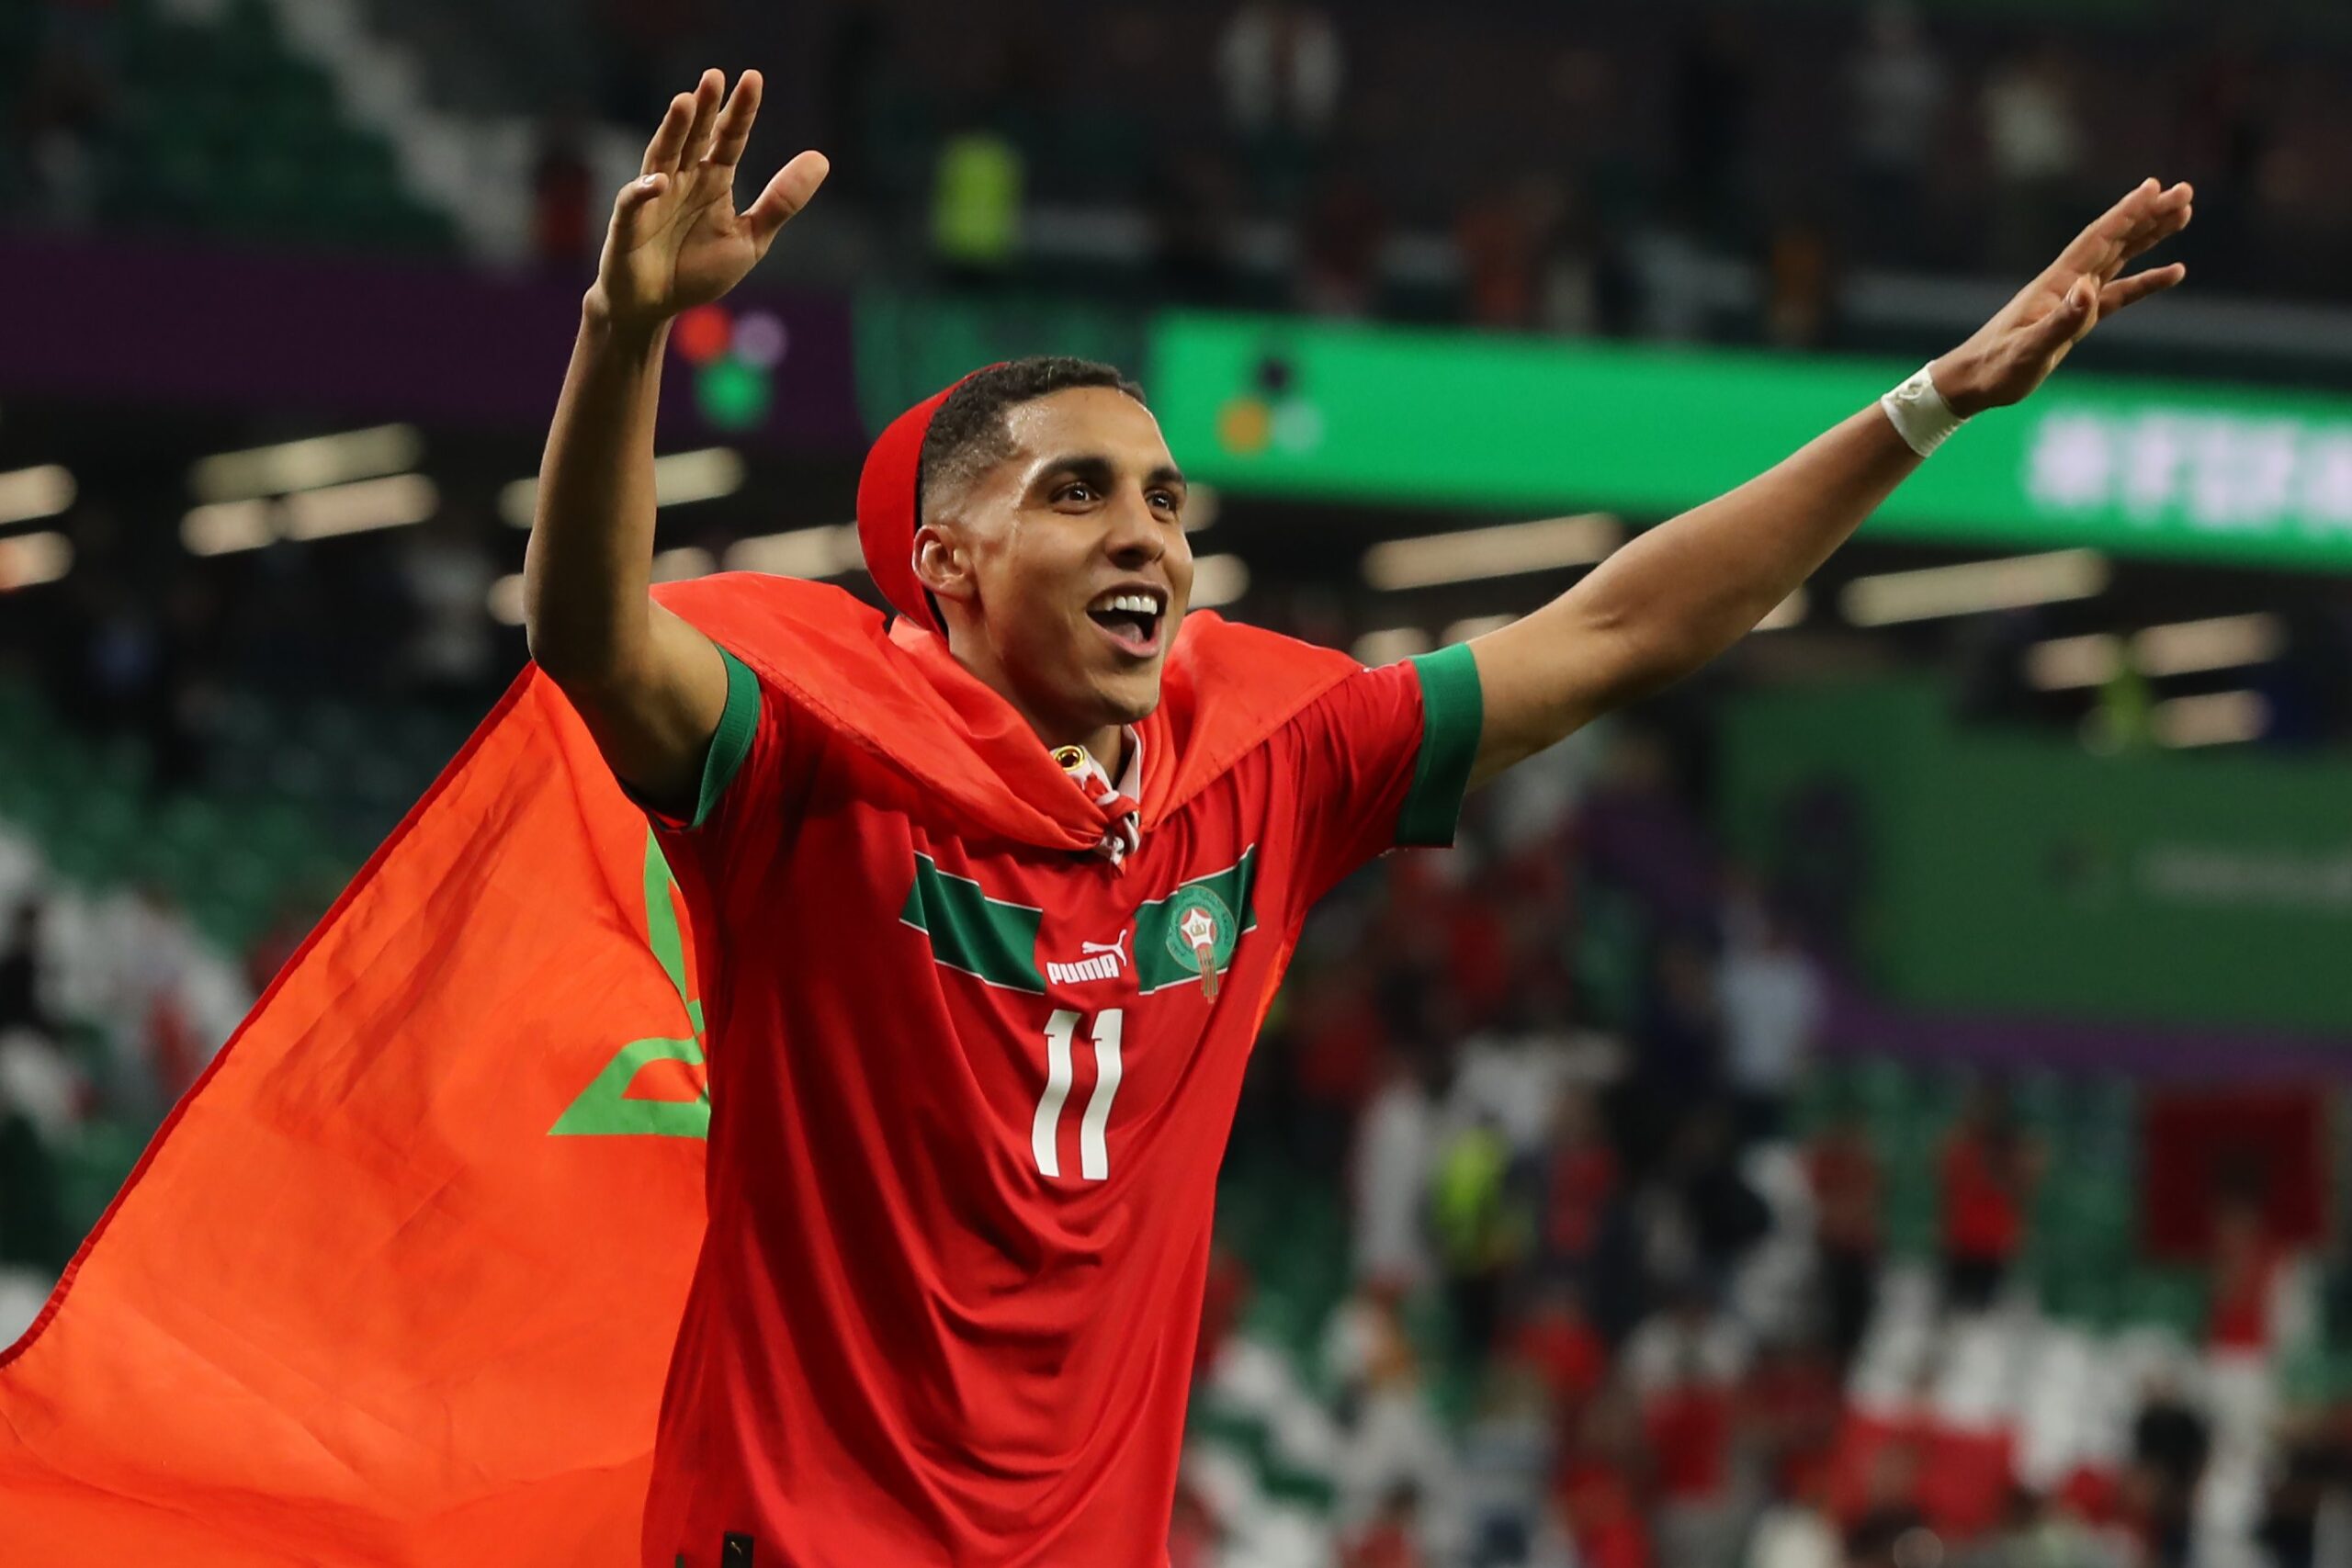 Goleiro do Sevilla brilha nos pênaltis e Marrocos elimina Espanha